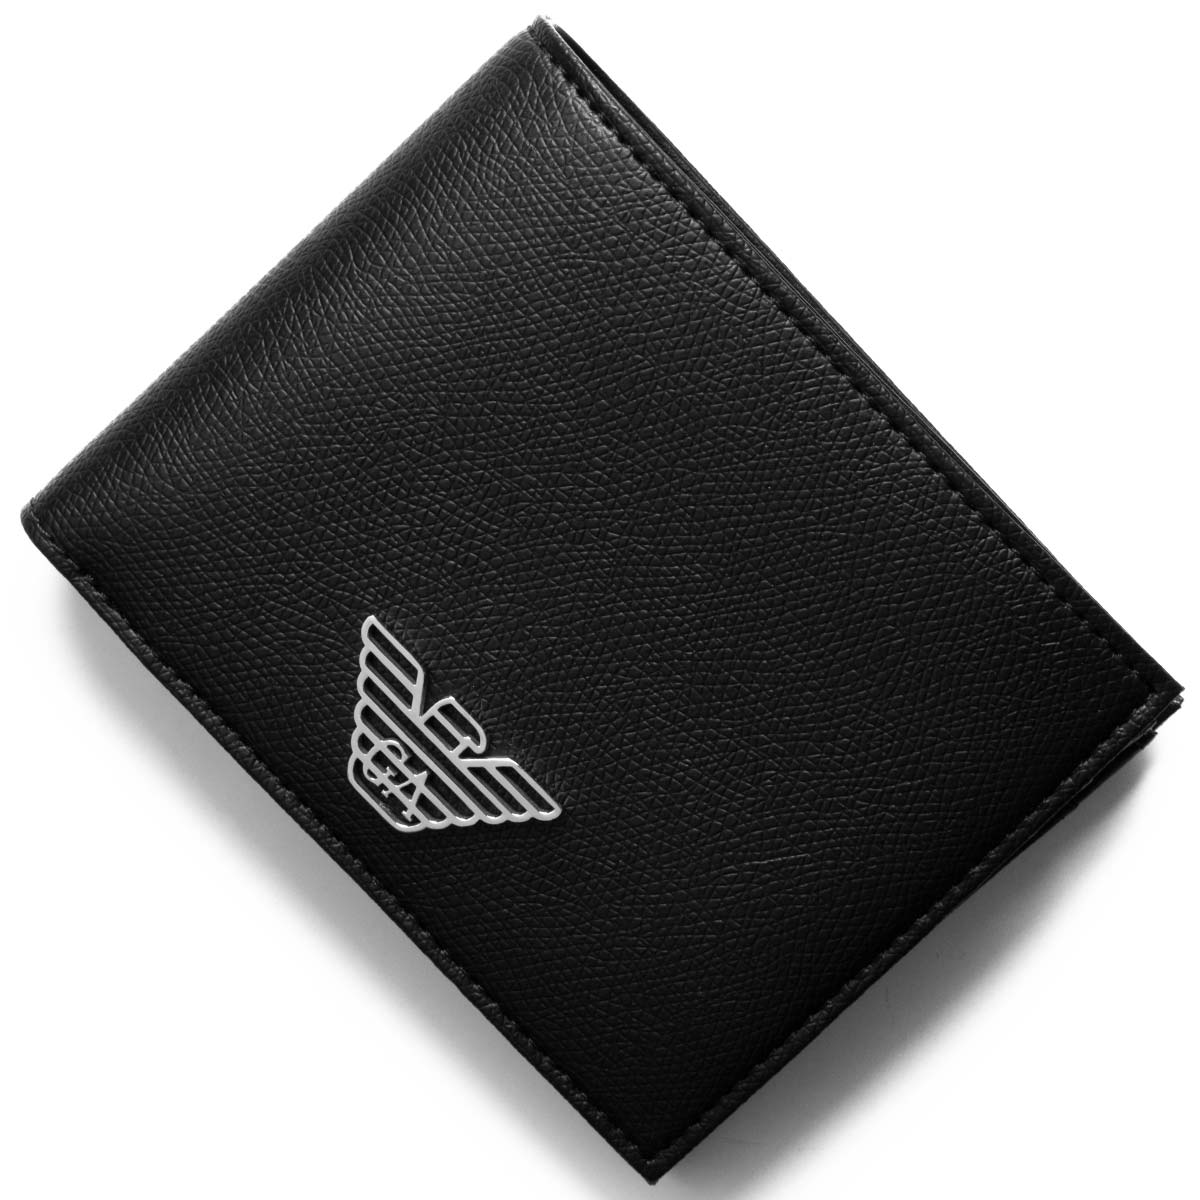 メンズファッション 財布、帽子、ファッション小物 エンポリオアルマーニ 二つ折り財布 財布 メンズ イーグルマーク ブラック Y4R165 YLA0E 81072 EMPORIO ARMANI